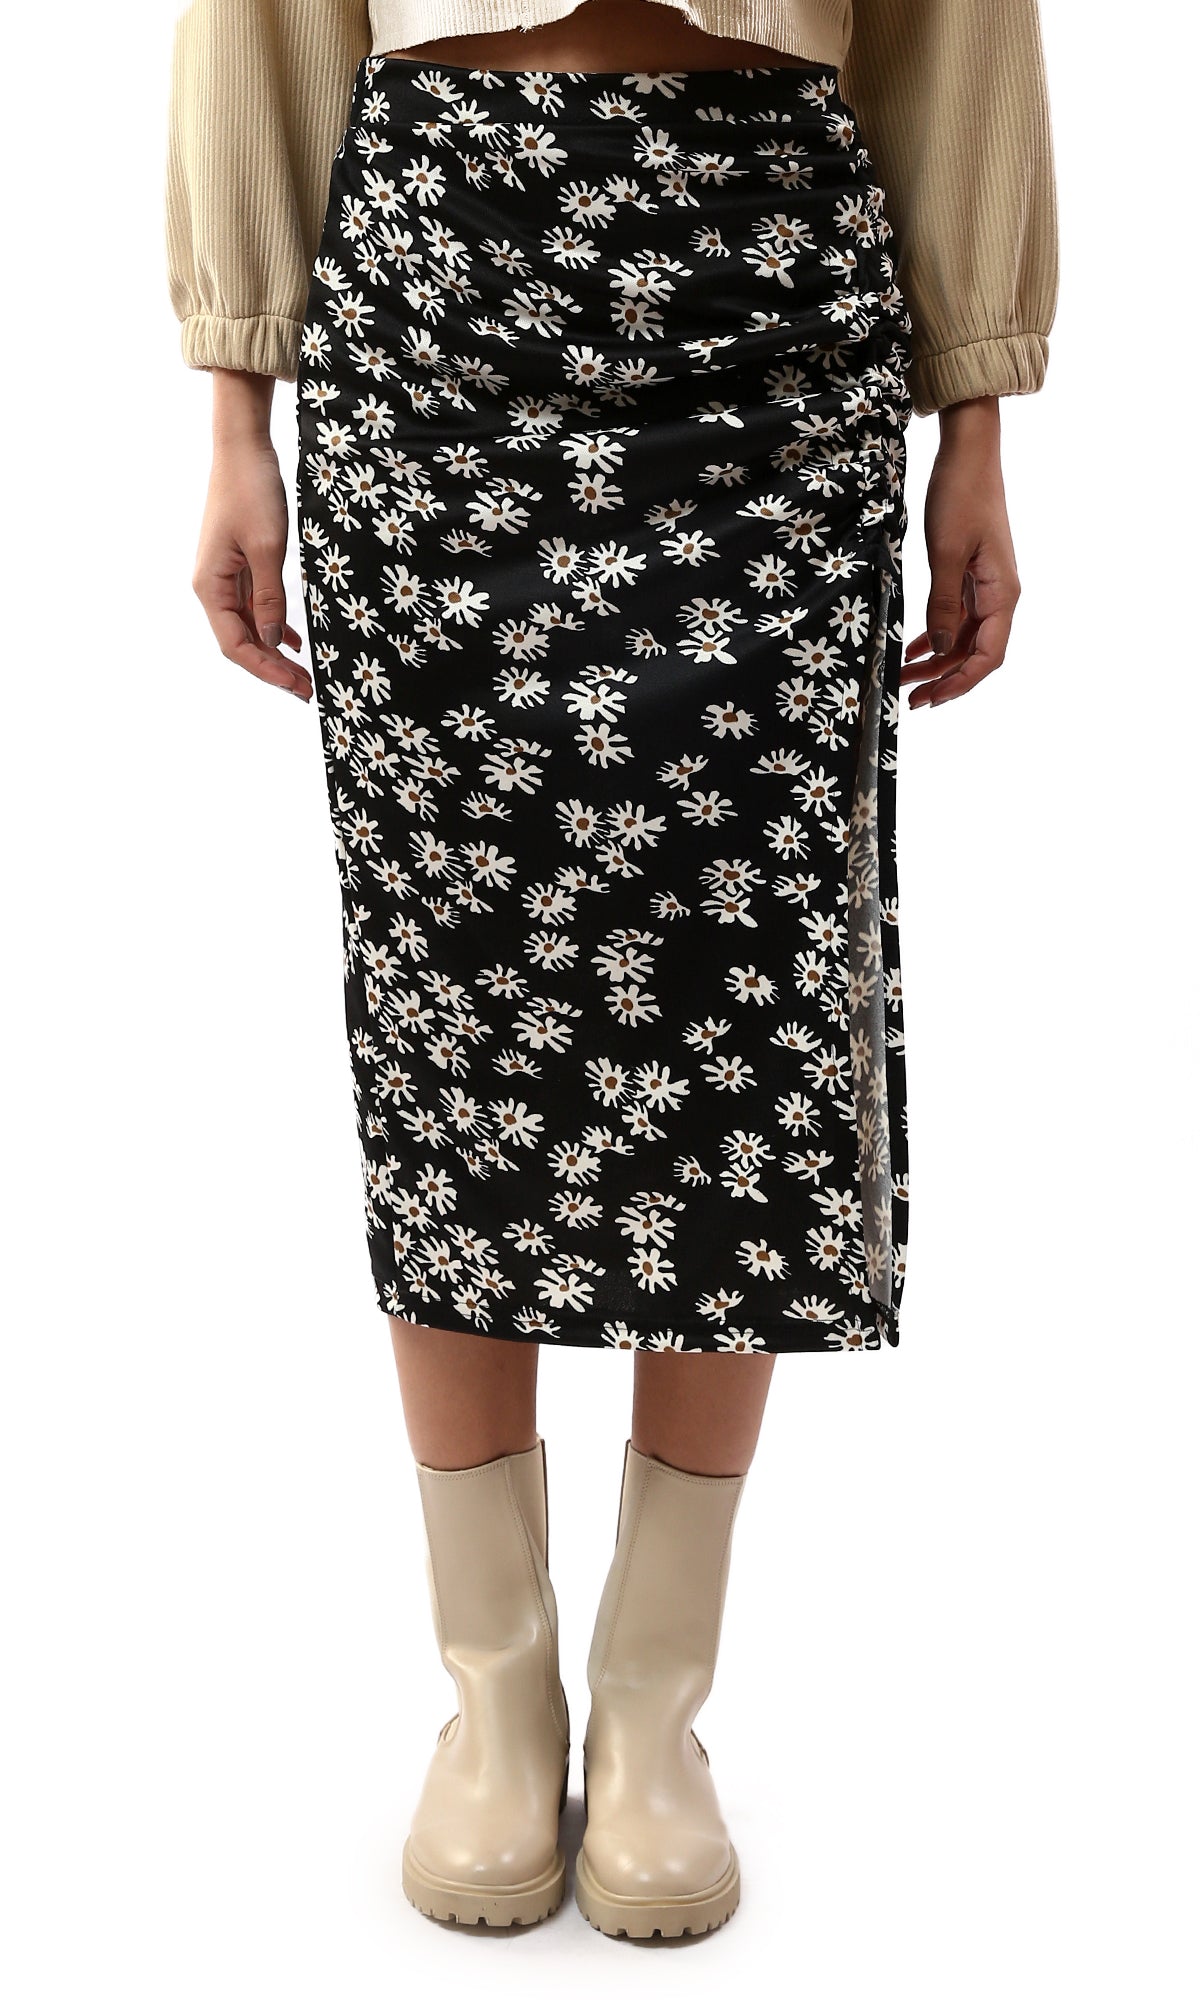 O178289 Floral Elastic Waist Black Skirt With Front Slit